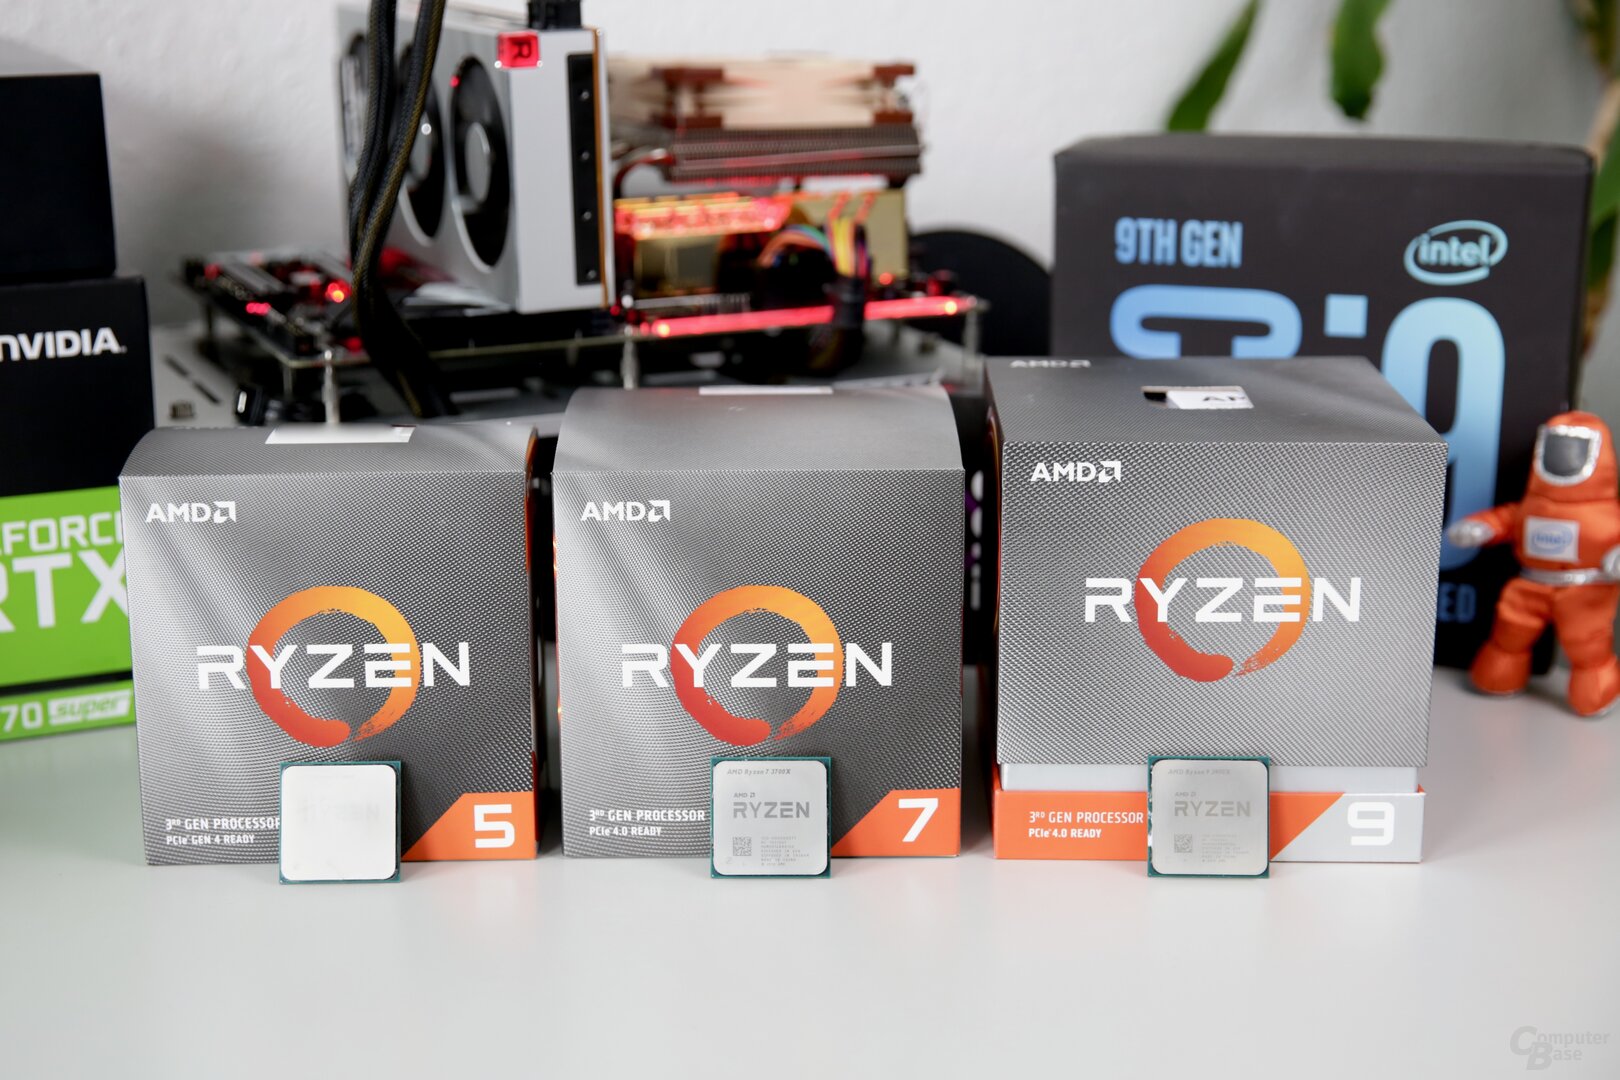 AMD Ryzen 9 3900X, 7 3700X und 5 3600 mit Zen 2 im Test